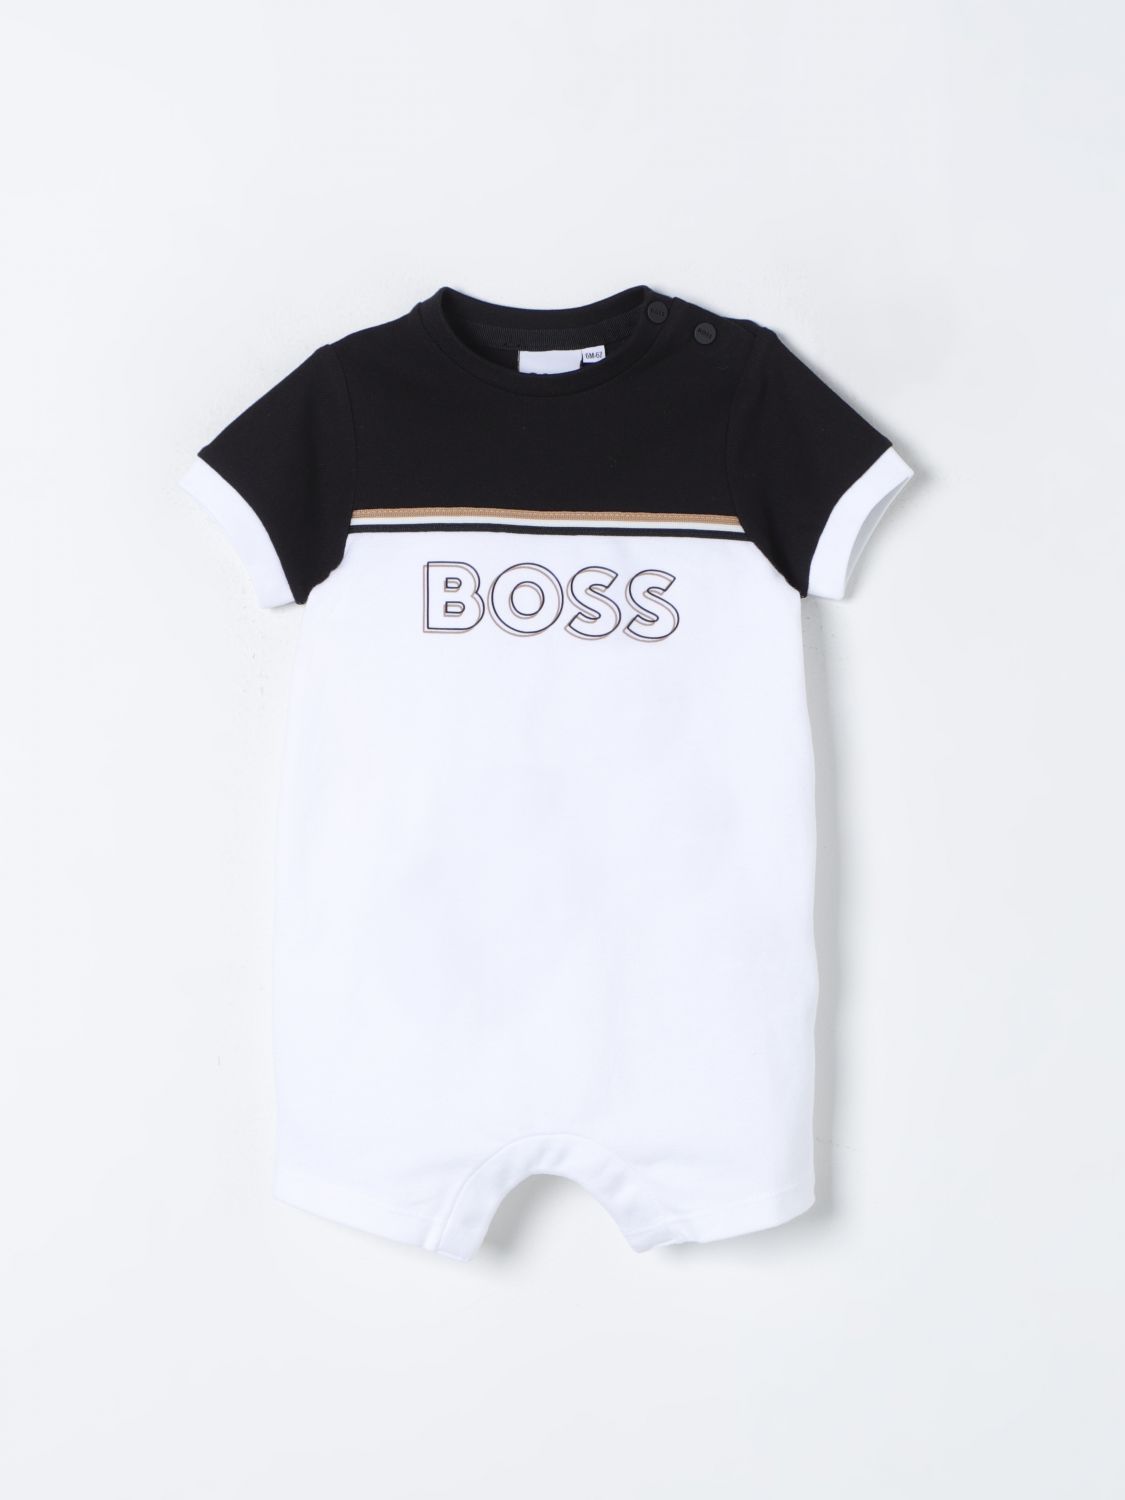 Shop Bosswear Tracksuits Boss Kidswear Kids Color White